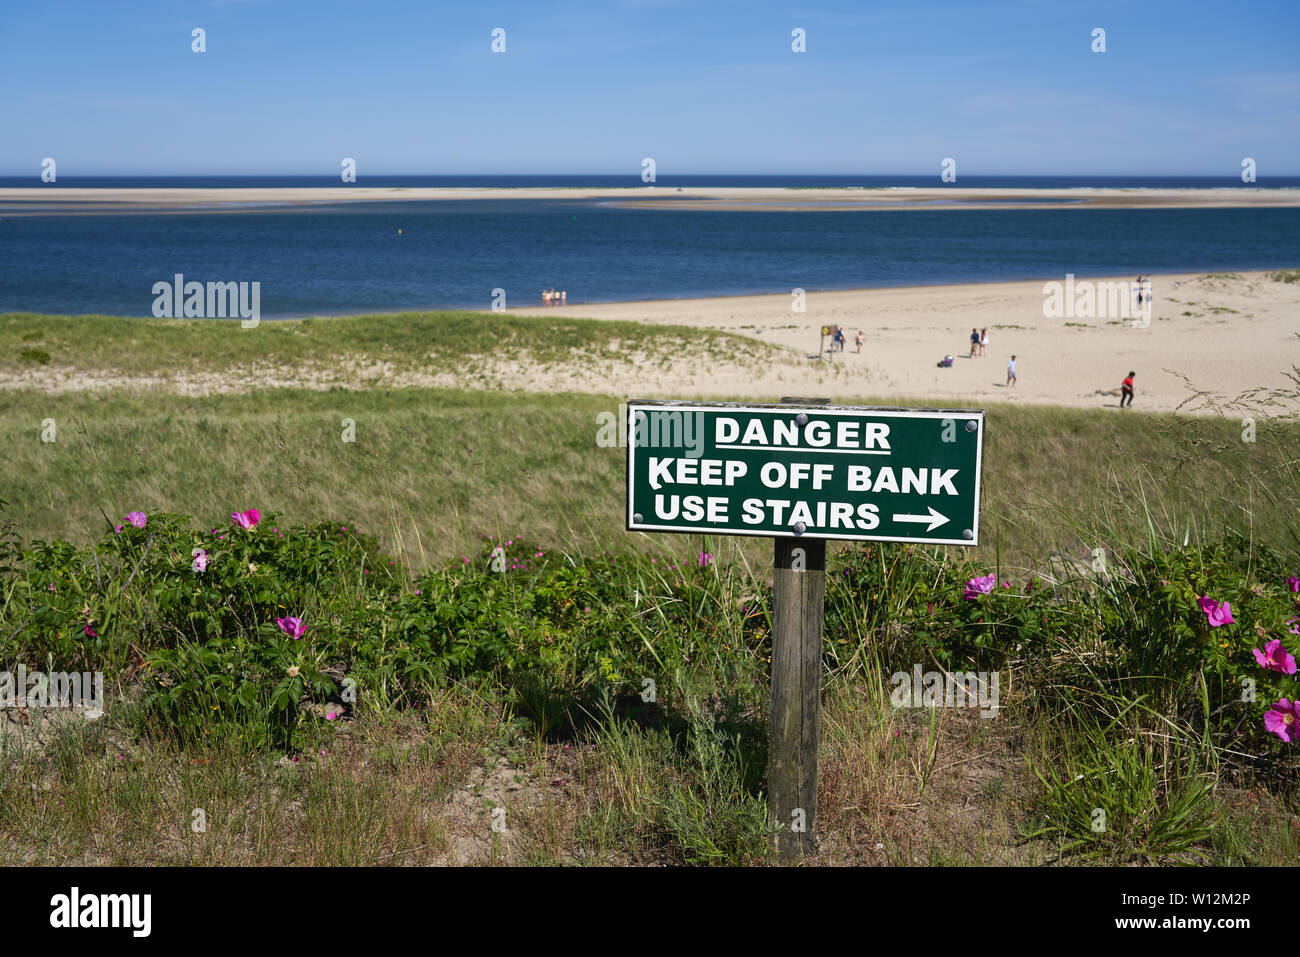 Warnschild auf der Bank über Lighthouse Beach in Chatham, Massachusetts mit hellen rosa Strand Rosen im Dune Grass und Leute genießen den Strand Stockfoto